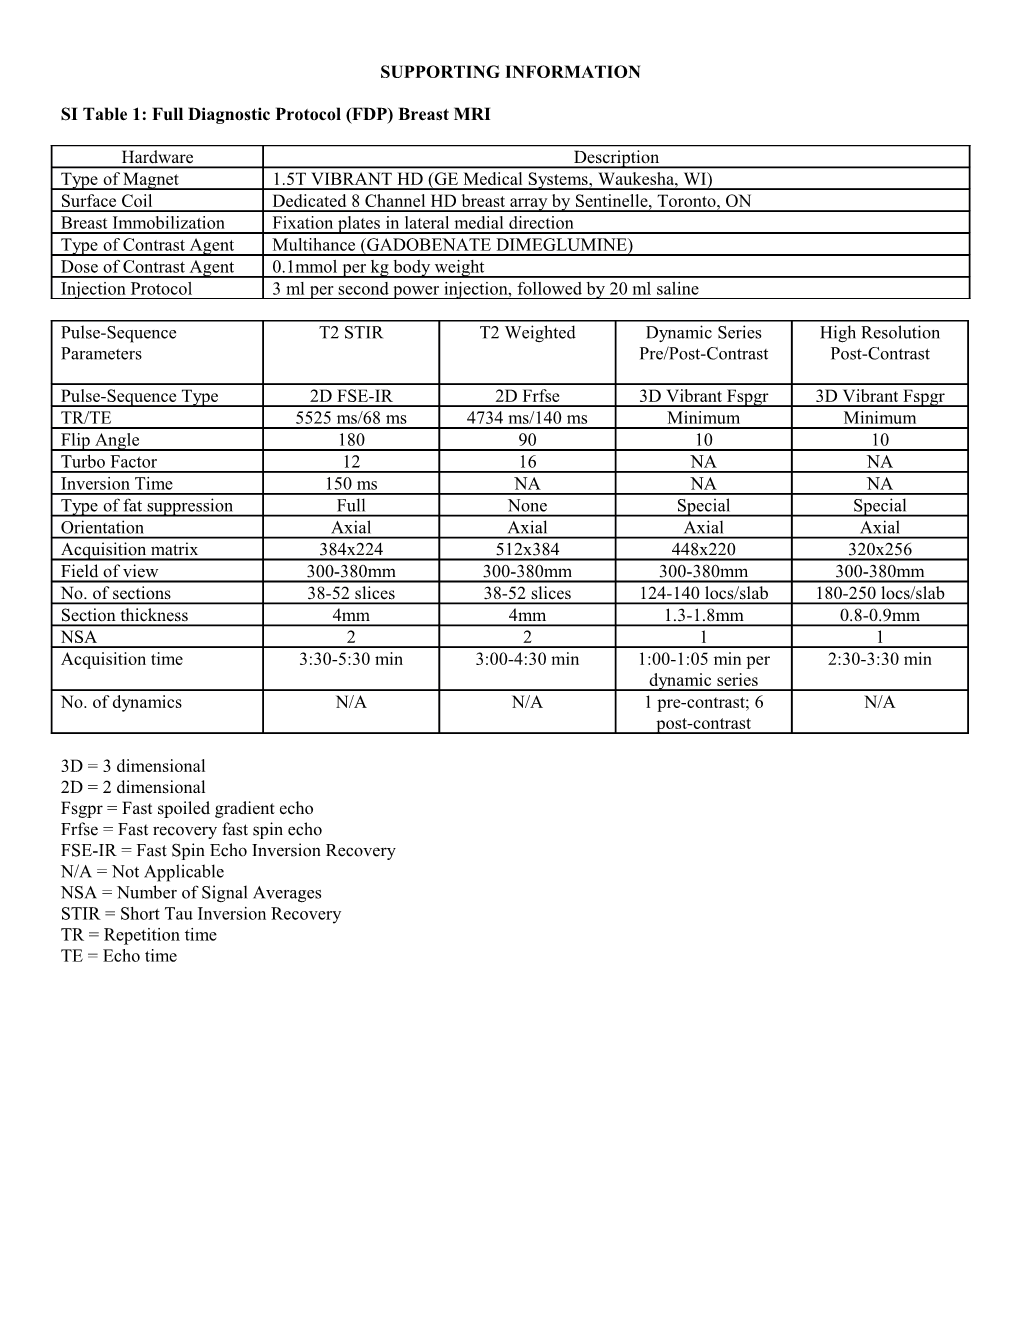 SI Table 1: Full Diagnostic Protocol (FDP) Breast MRI